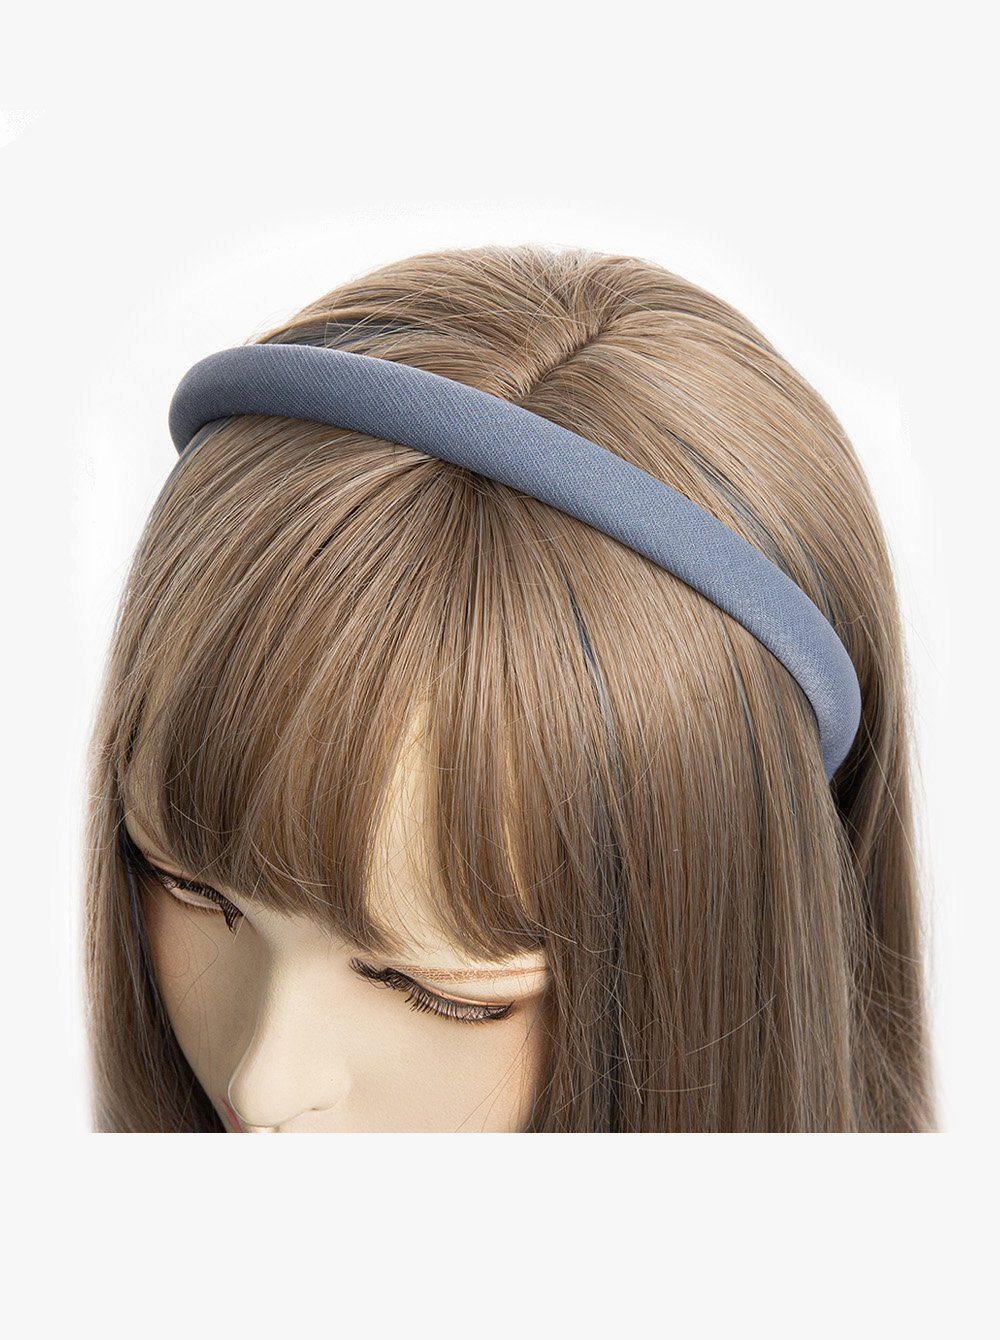 günstigster Preis axy Haarreif Haarreif aus Stoff mit Jeansblau Wunderschön Metallicfäden, gepolstertes Haarschmuck Stirnband feinen